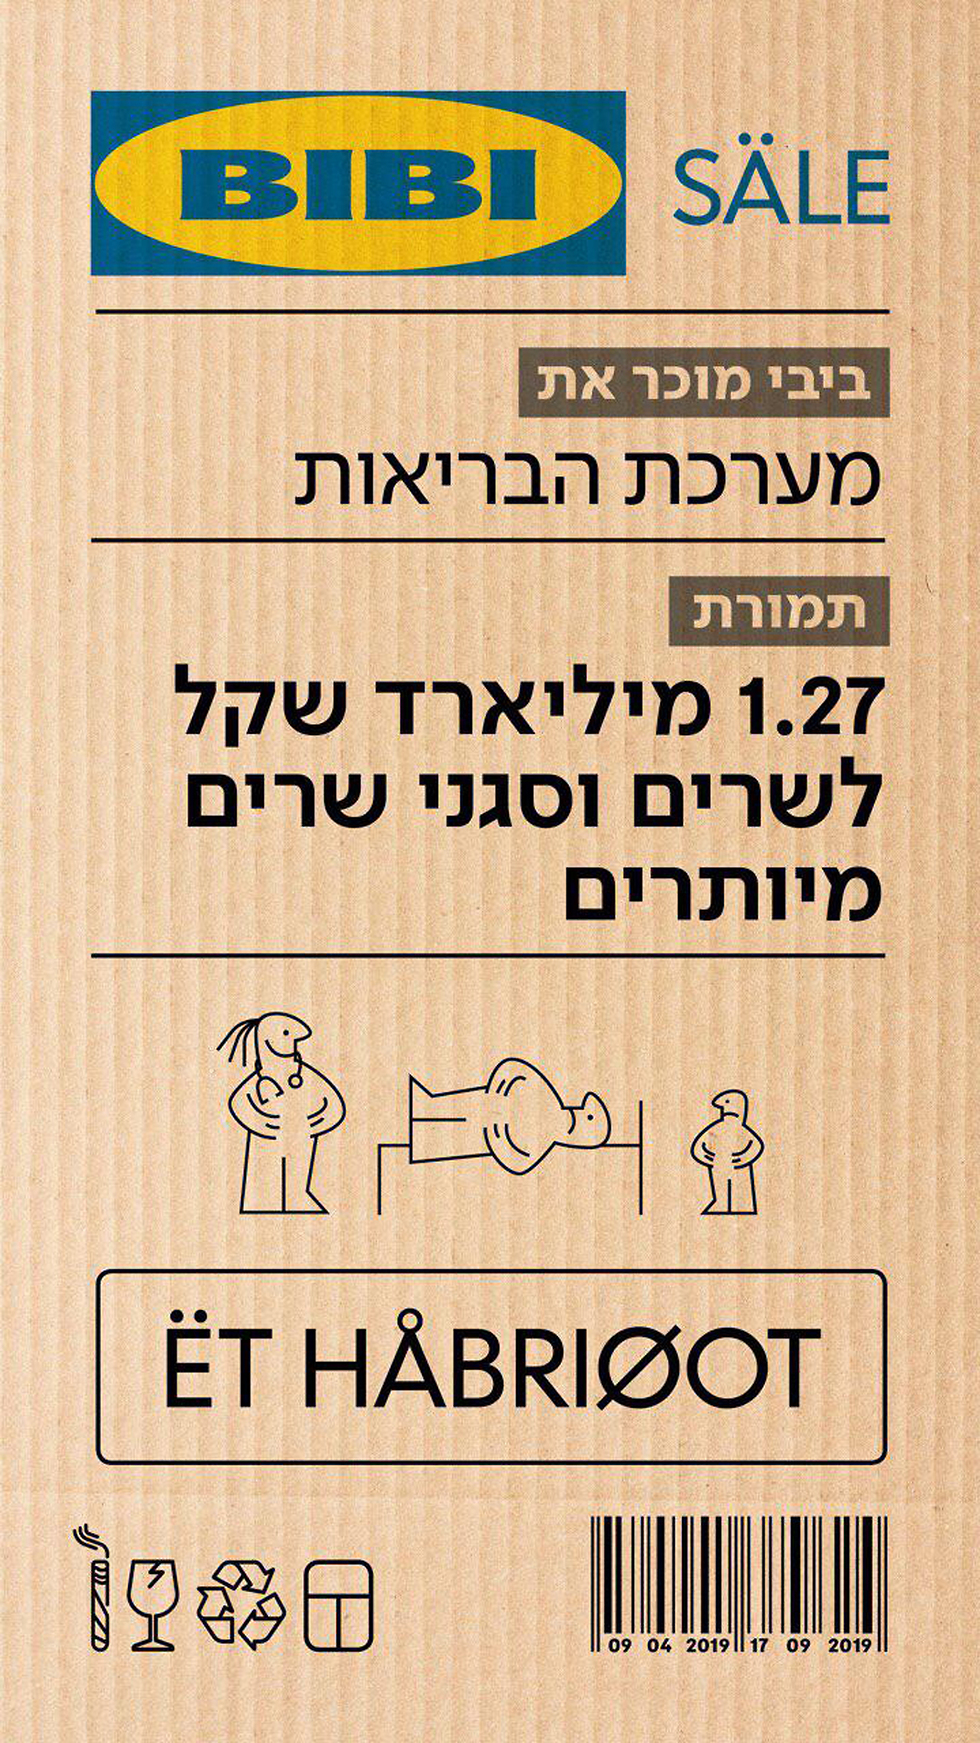 Пародийное объявление, опубликованное Яиром Лапидом: "Система здравоохранения - за 1,27 млрд шекелей"